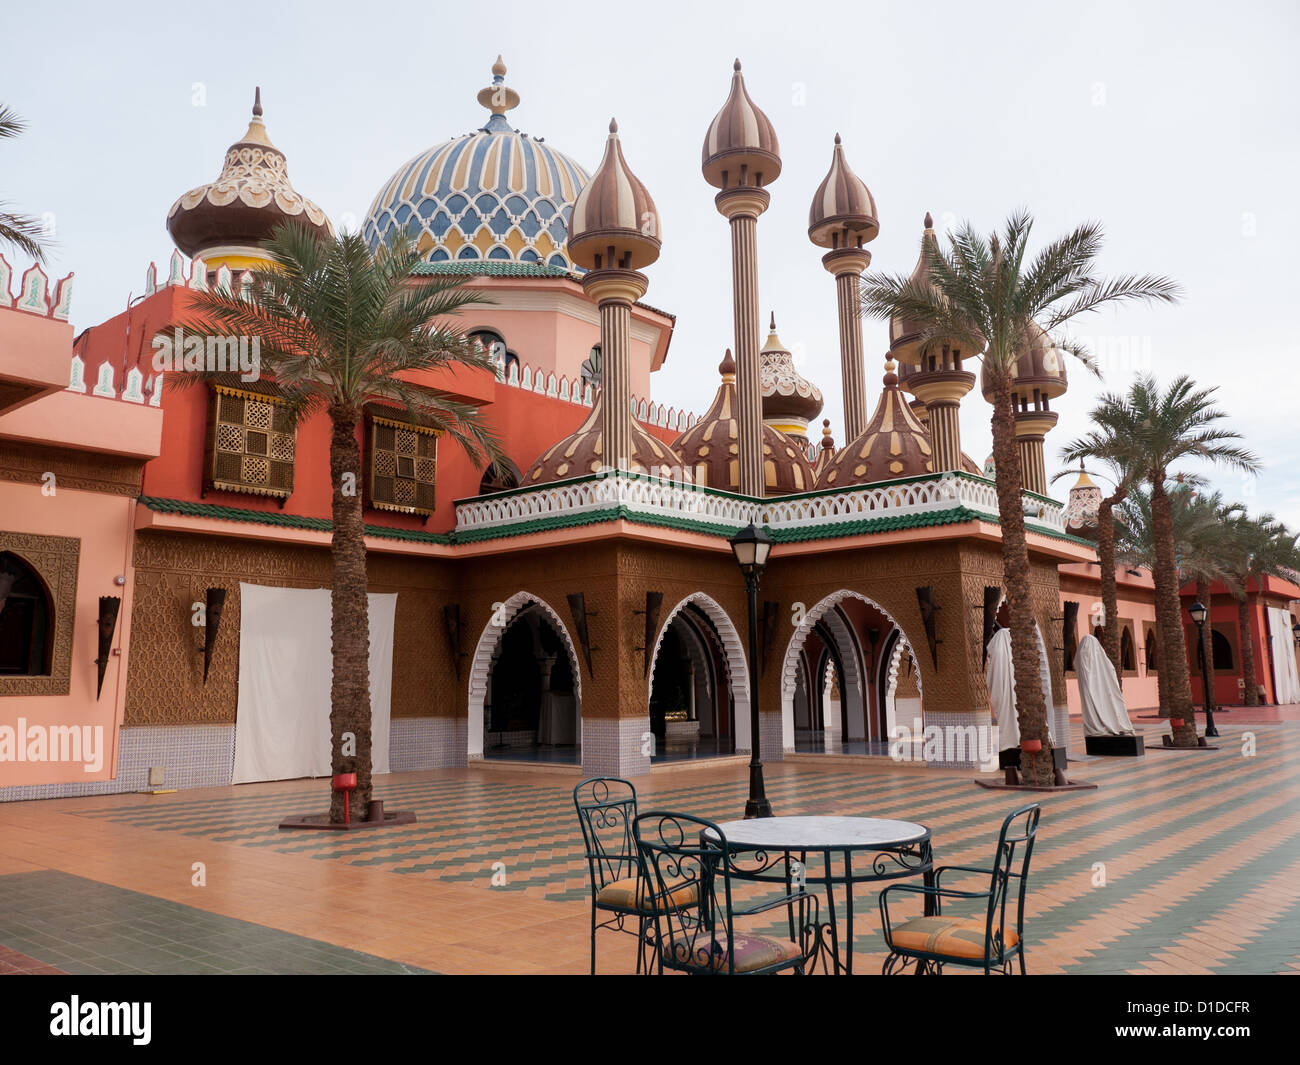 Arches et Dome dans le palais à l'intérieur de Fantasia, un centre de divertissement à Charm El Cheikh, Egypte Banque D'Images